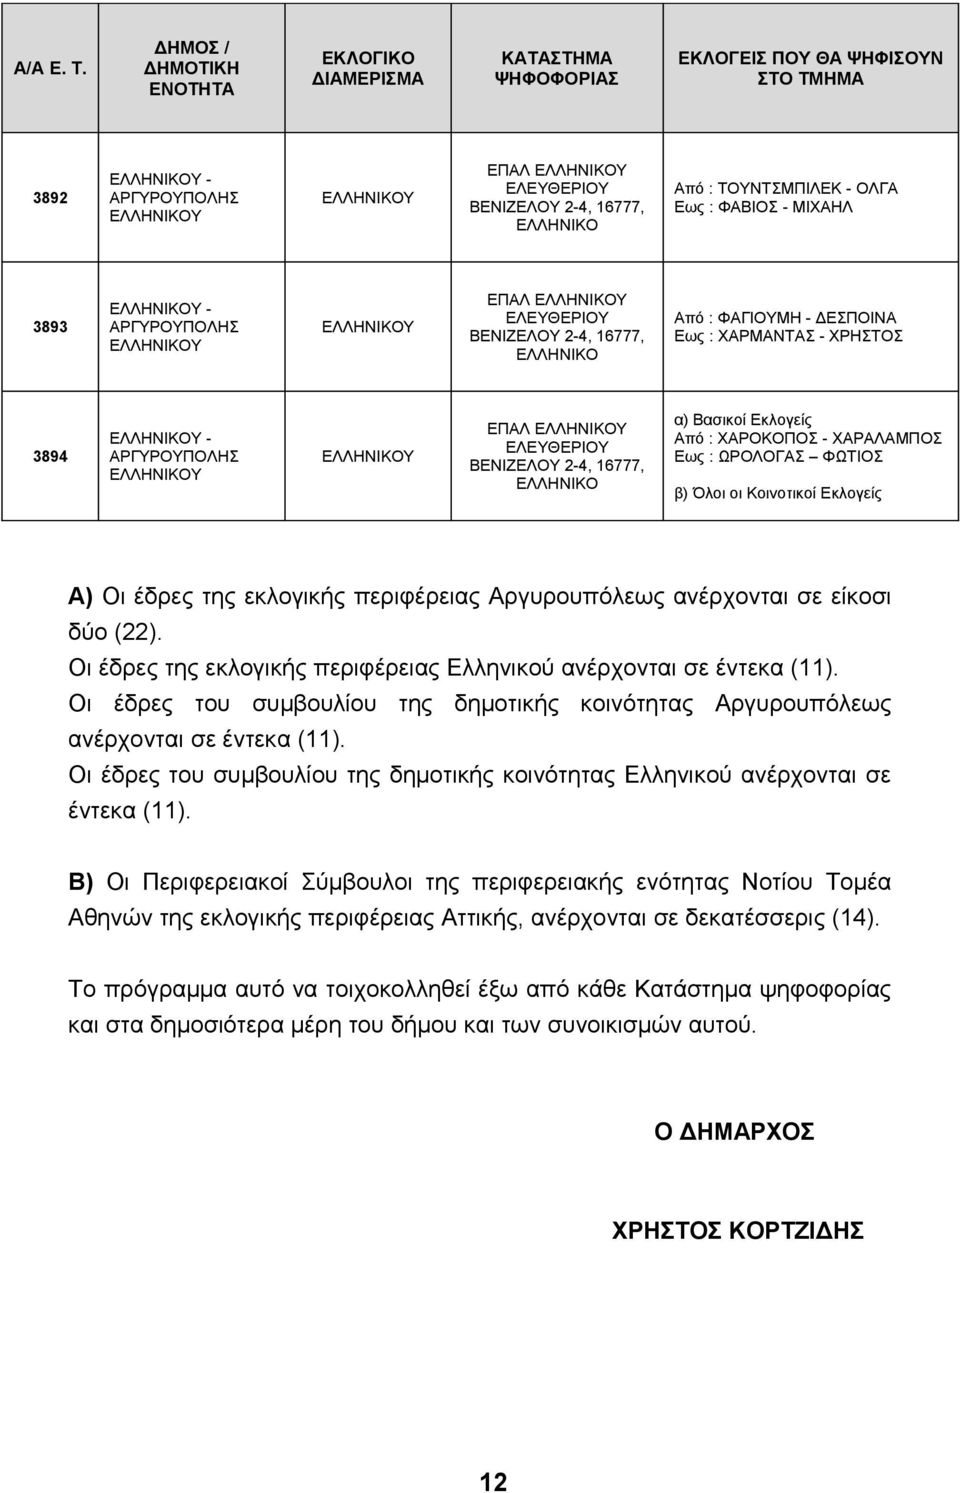 Οι έδρες του συμβουλίου της δημοτικής κοινότητας Αργυρουπόλεως ανέρχονται σε έντεκα (11). Οι έδρες του συμβουλίου της δημοτικής κοινότητας Ελληνικού ανέρχονται σε έντεκα (11).